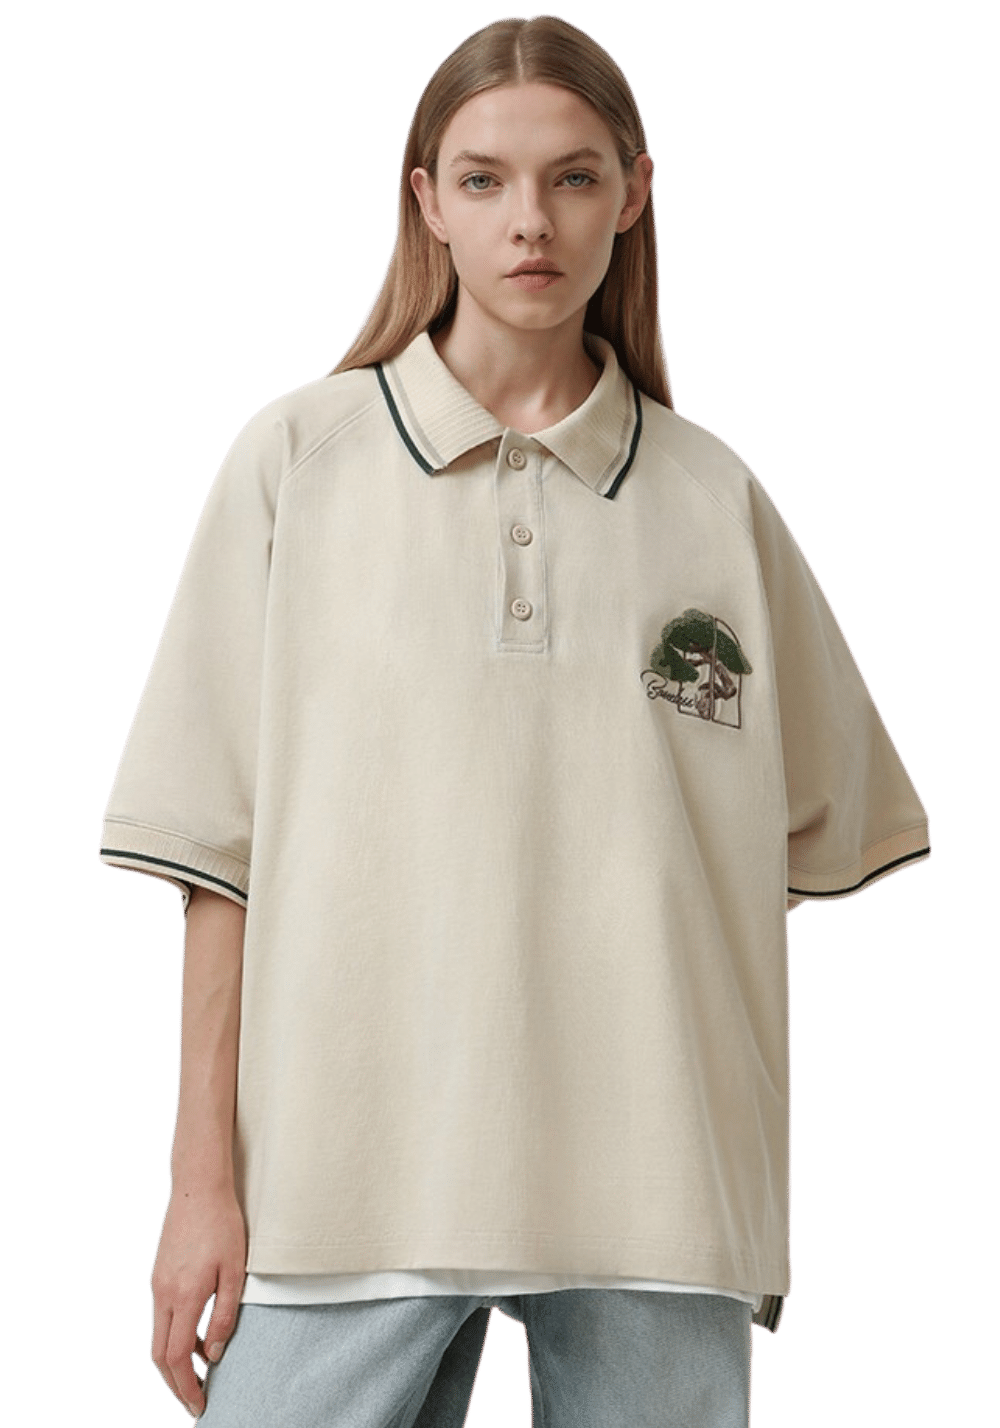 Embroidered Vintage Polo Shirt - PSYLOS 1, Embroidered Vintage Polo Shirt, T-Shirt, Boneless, PSYLOS 1